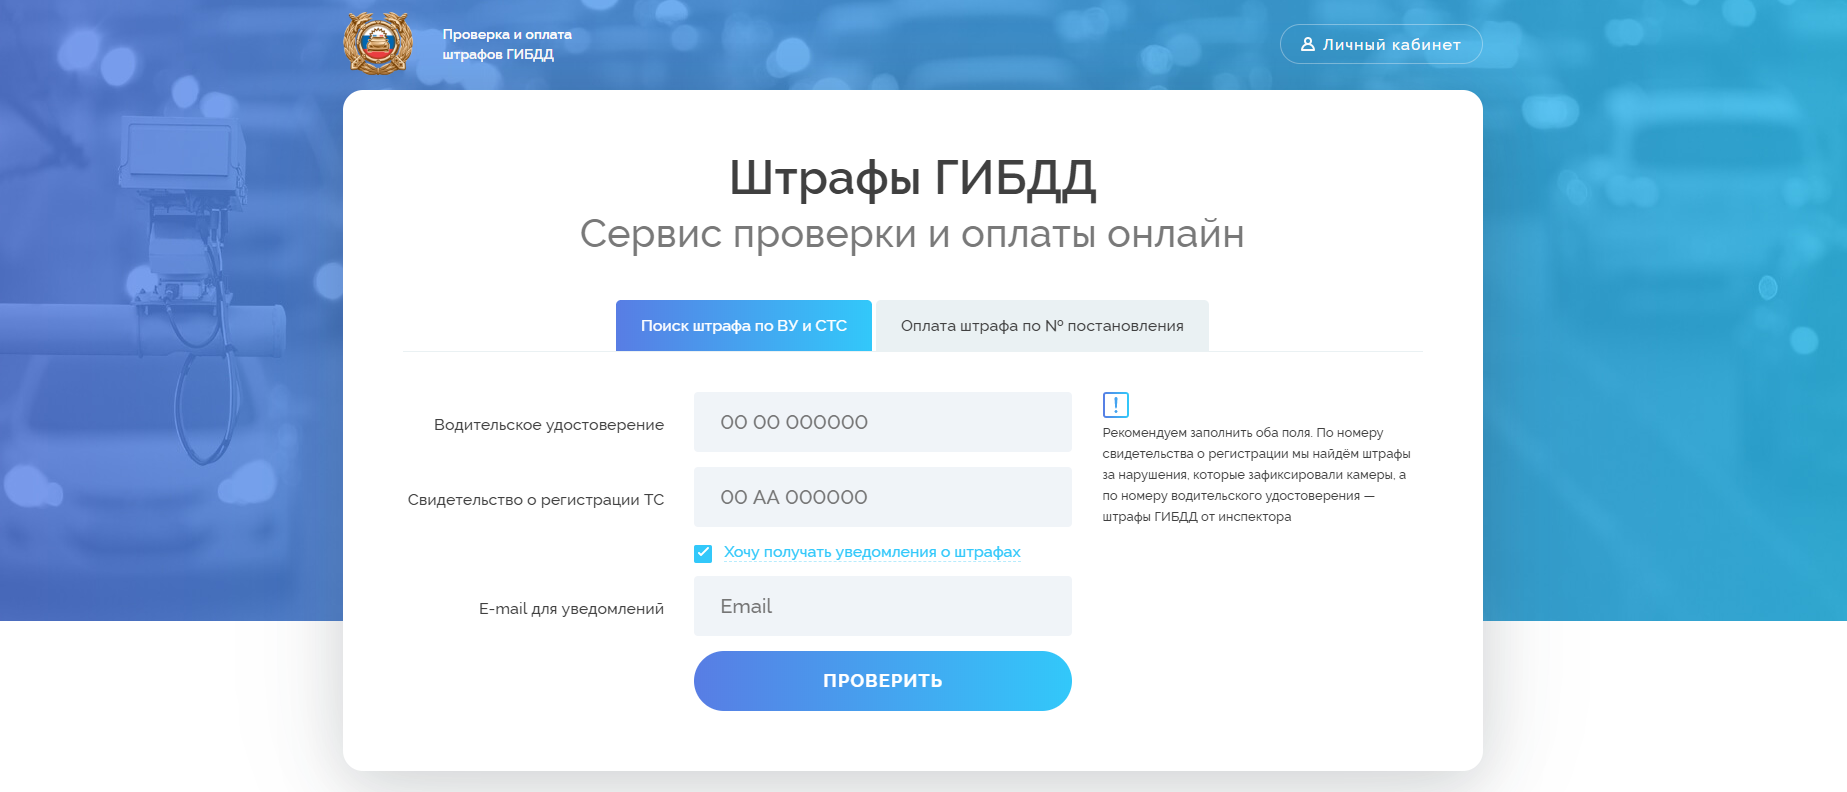 Яндекс штрафы гибдд онлайн проверка по постановлению